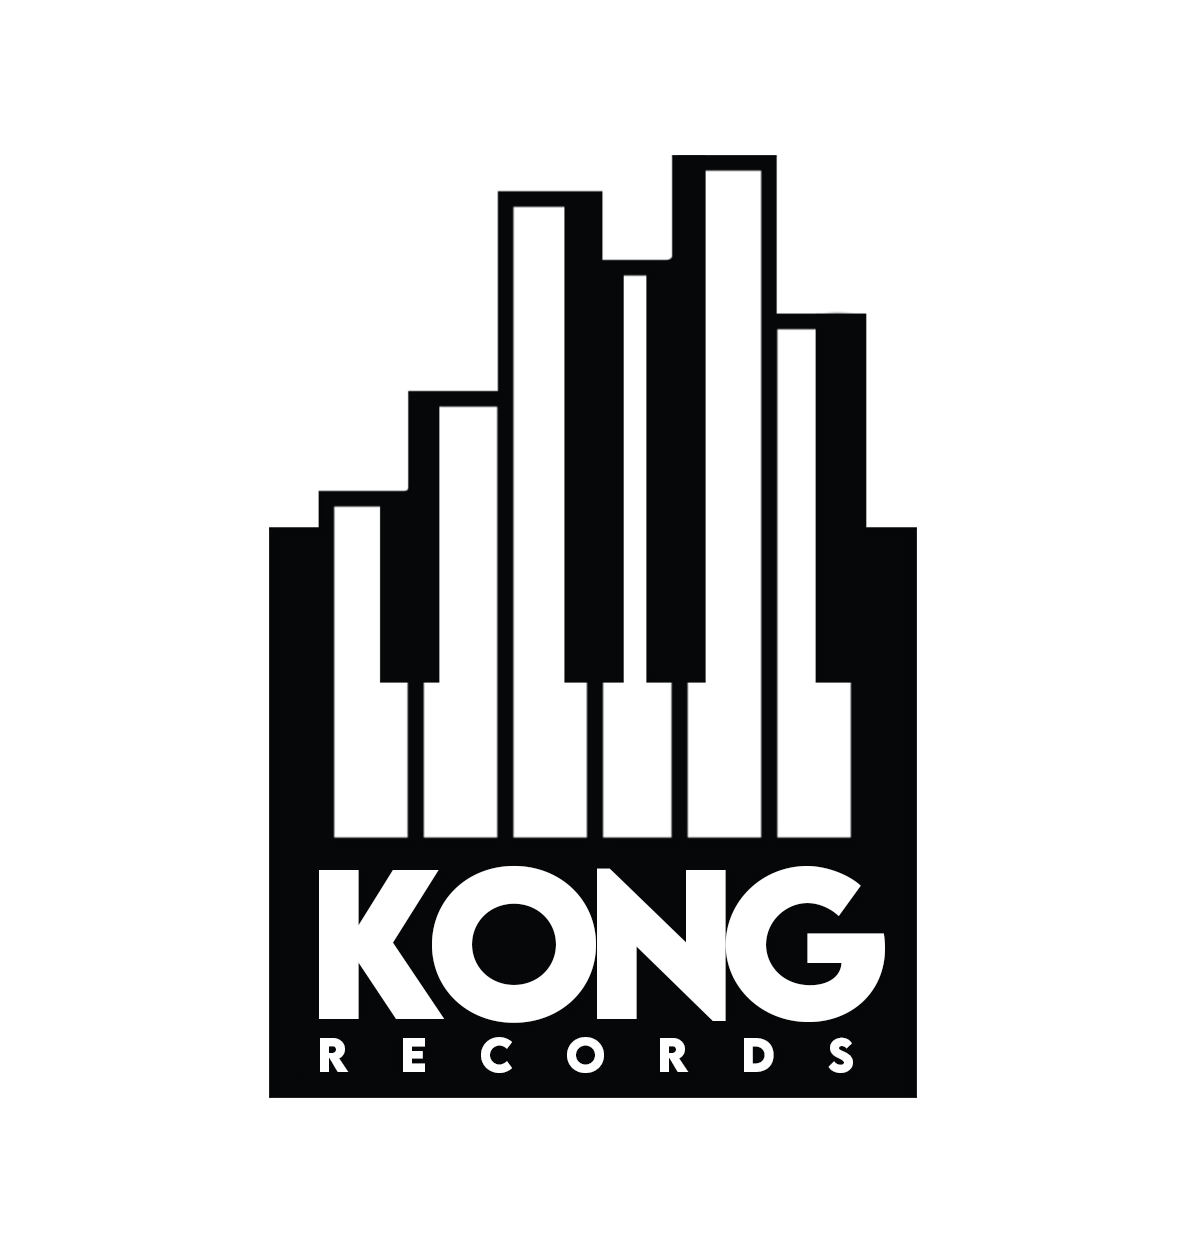 Kong Records